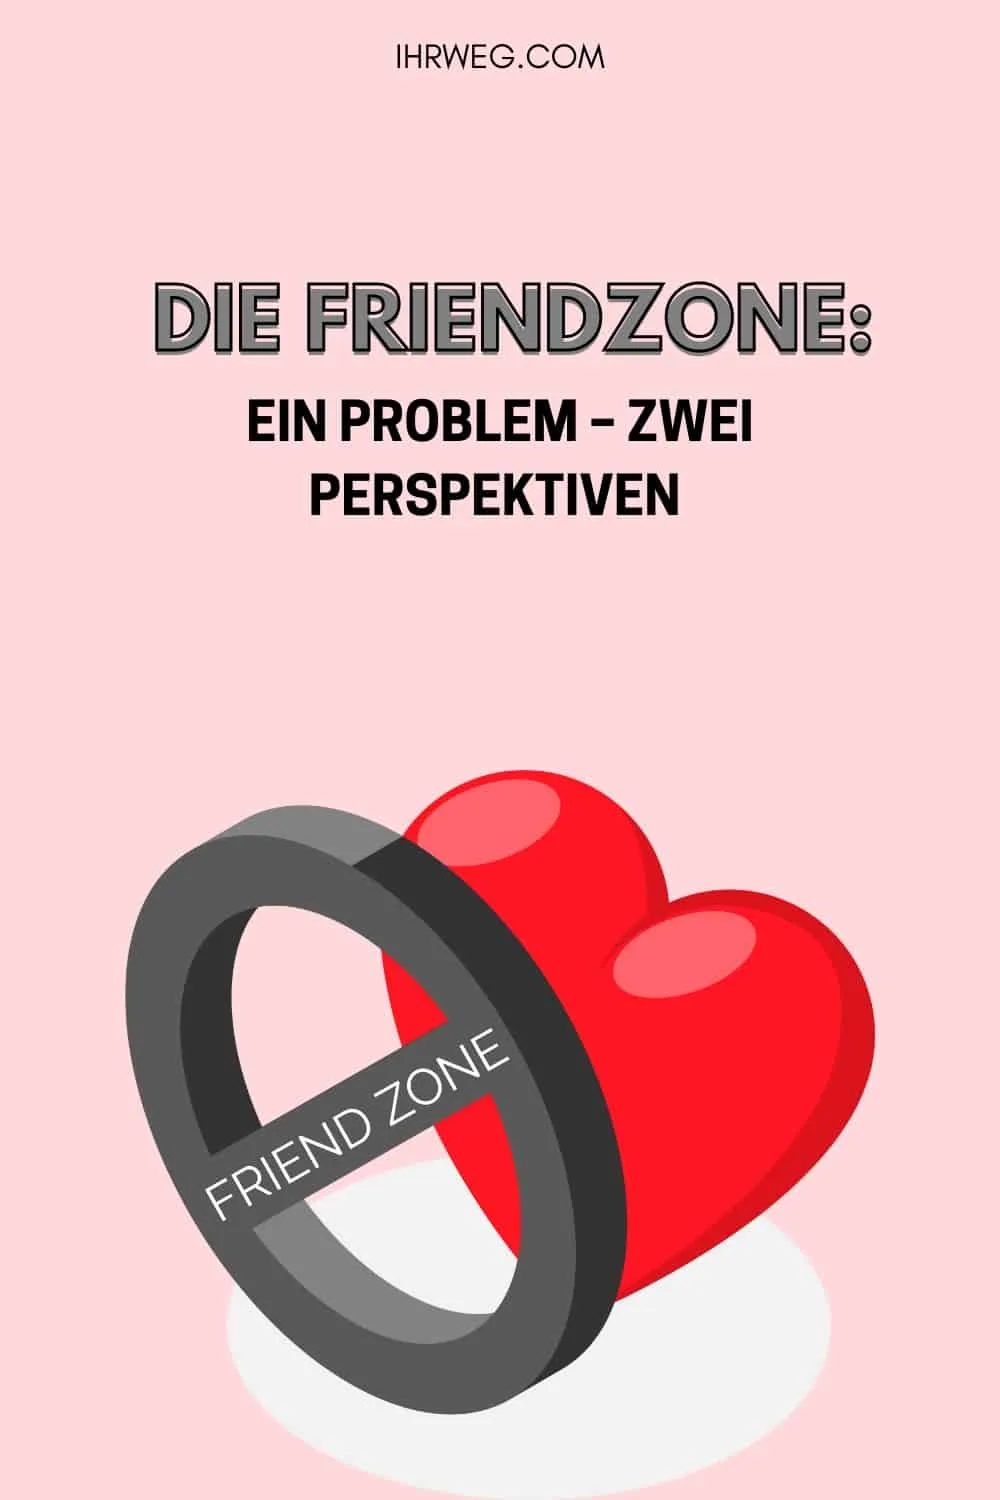 Friendzone als Problem aus zwei Perspektiven